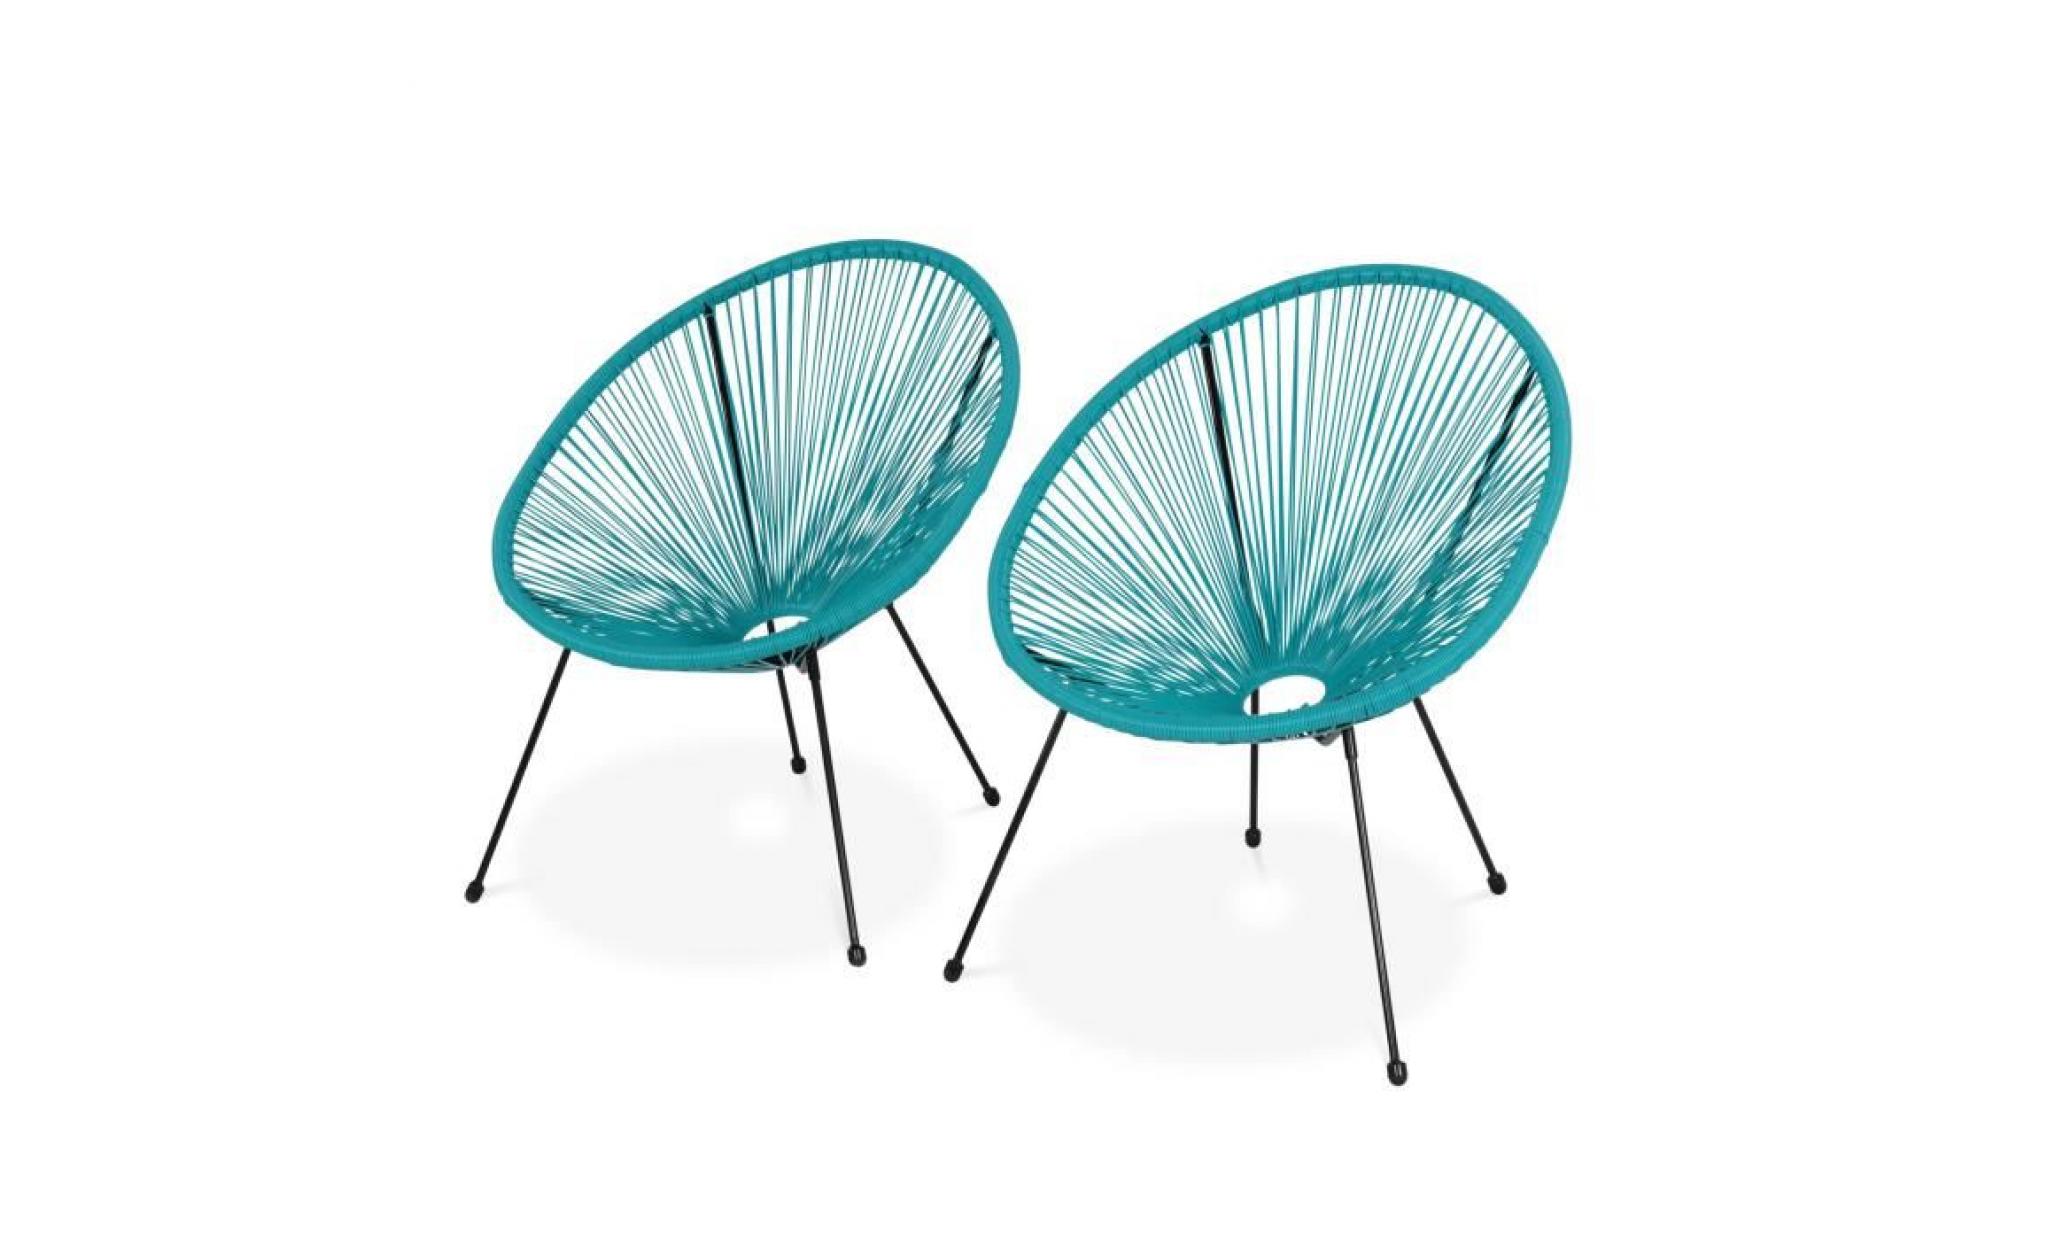 lot de 2 fauteuils design oeuf   acapulco turquoise   fauteuils 4 pieds design rétro, cordage plastique, intérieur / extérieur